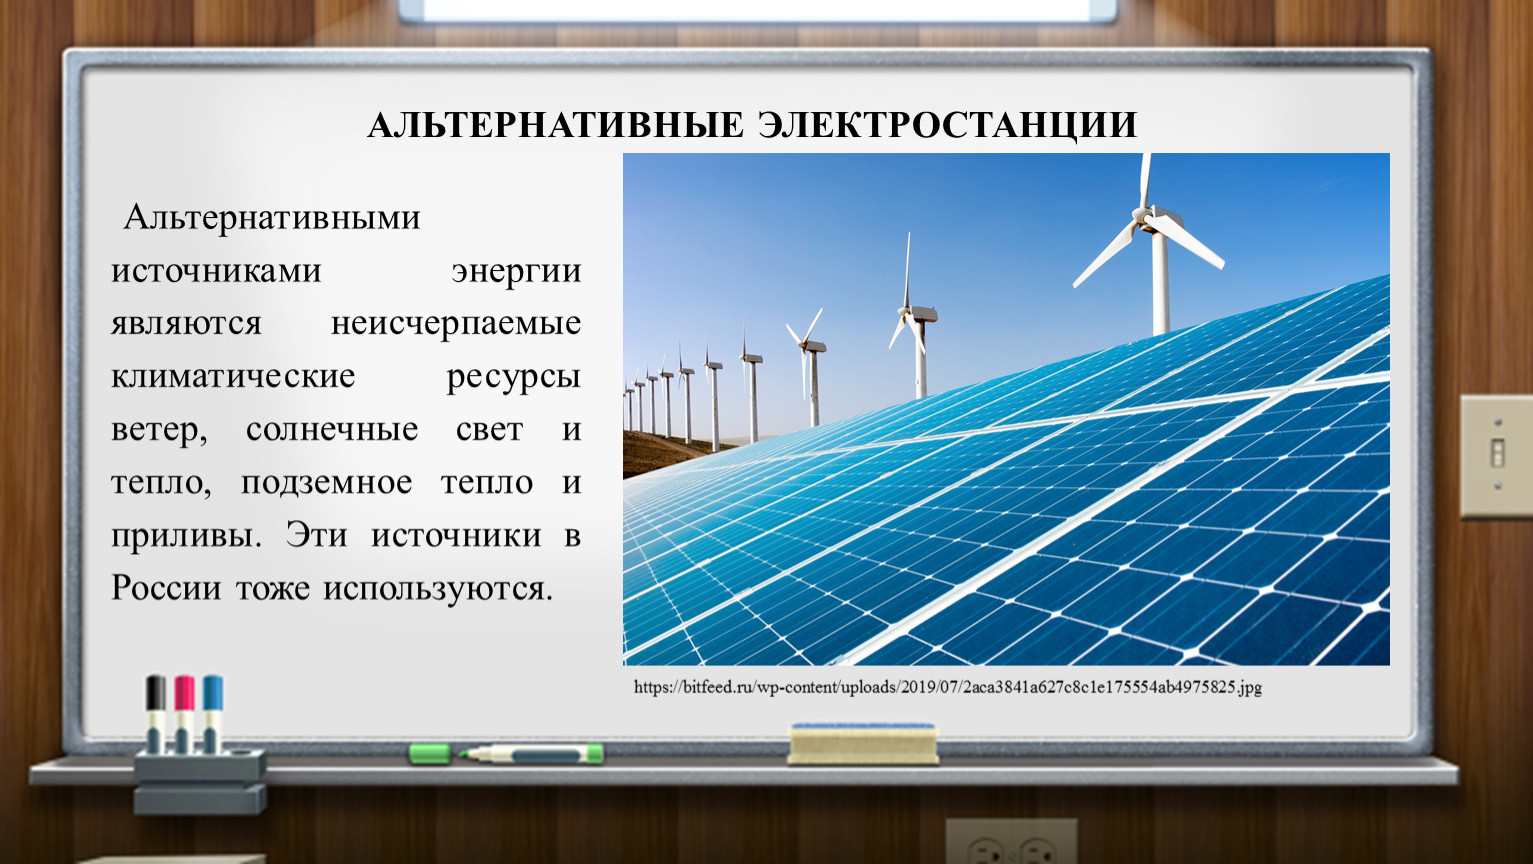 Какие альтернативные источники вам известны. Альтернативными источниками энергии являются. Альтернативные источники энергии перспективы. Перспективы нетрадиционных источников энергии. Альтернативные источники энергии в России.